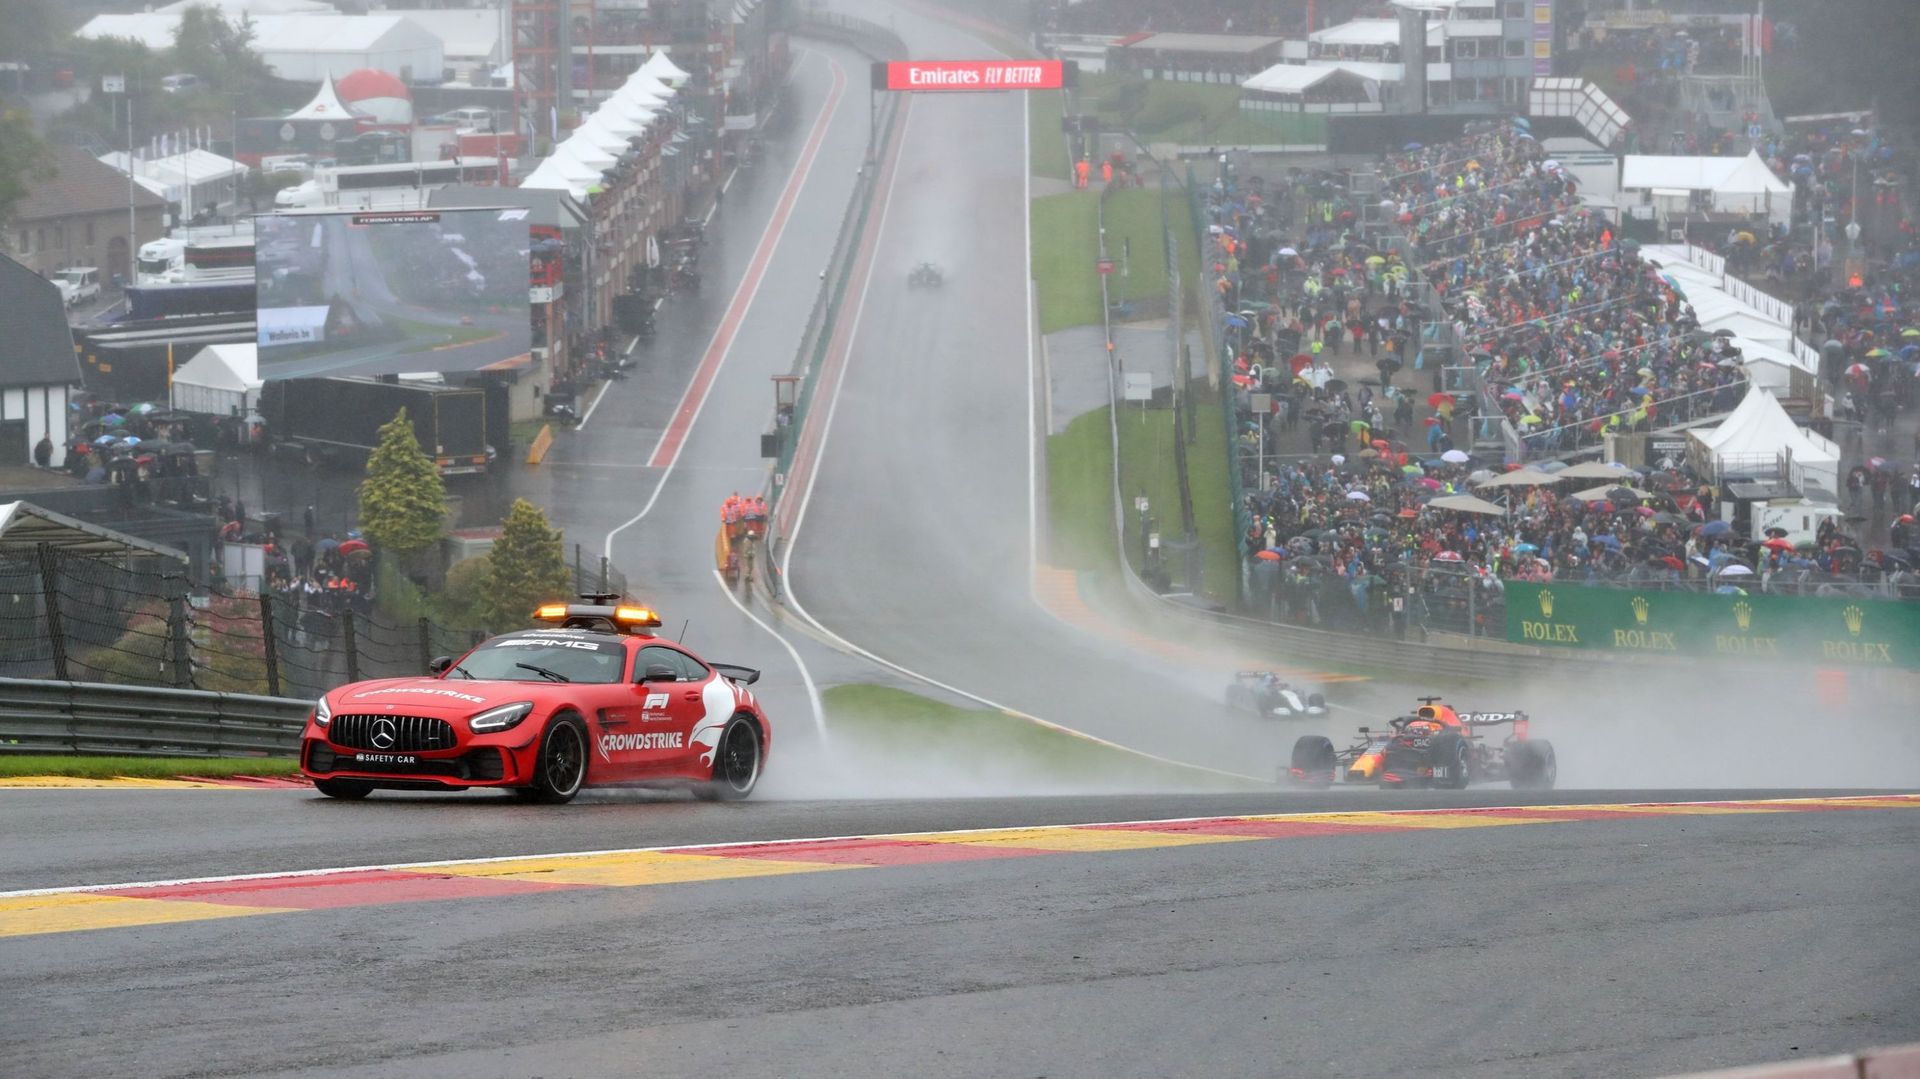 La Formule 1 envisage de modifier les règles qui ont permis à Max Verstappen de remporter la victoire au Grand Prix de Belgique de dimanche malgré l’absence d’une véritable course, indiquent lundi plusieurs médias.